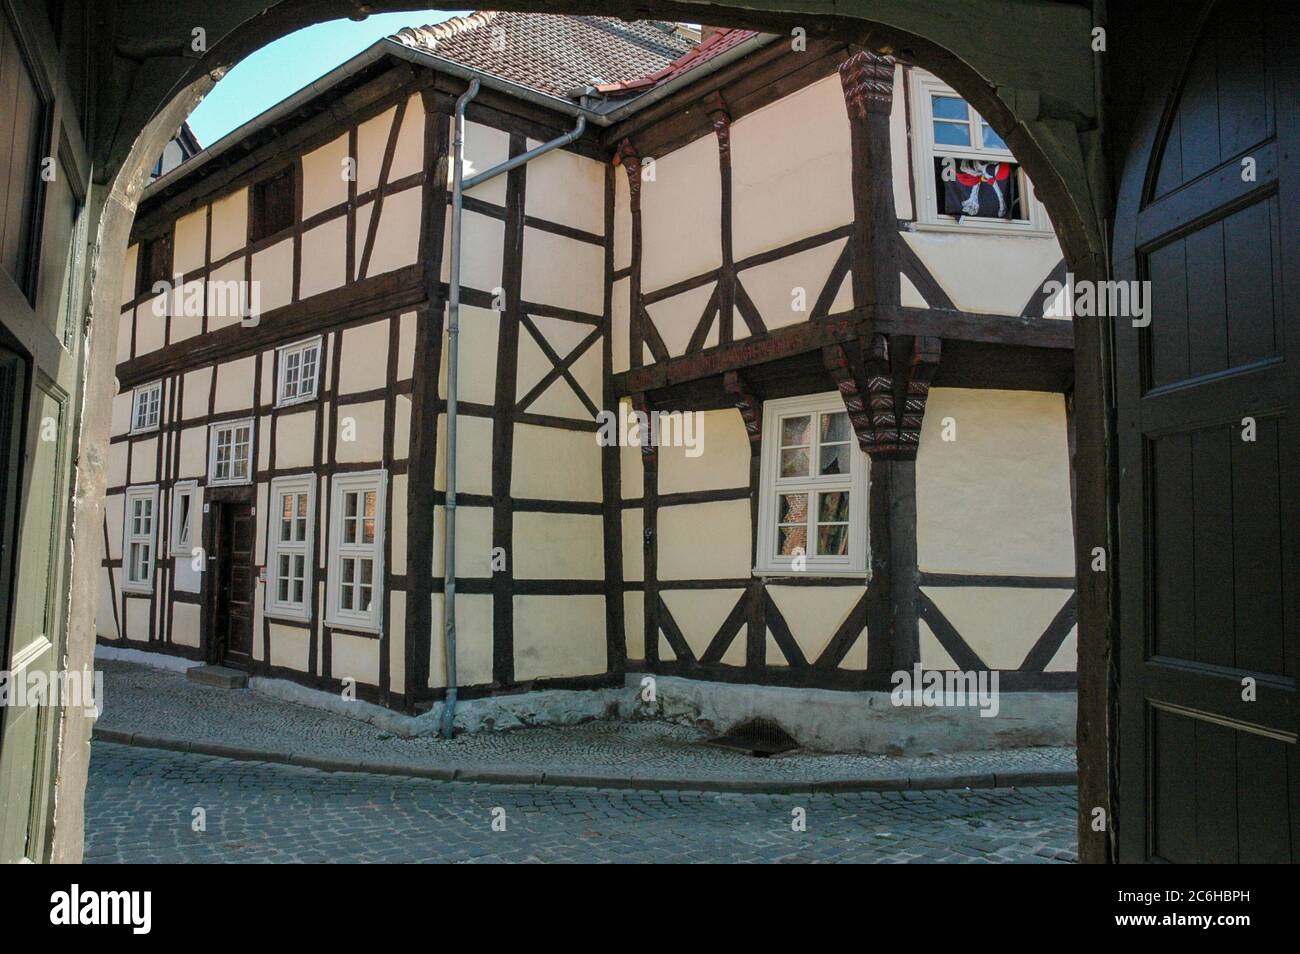 Salzwedel eine Kleinstadt in Sachsen-Anhalt, bekannt durch ihren Baumkuchen und die Fachwerk Architektur Stock Photo